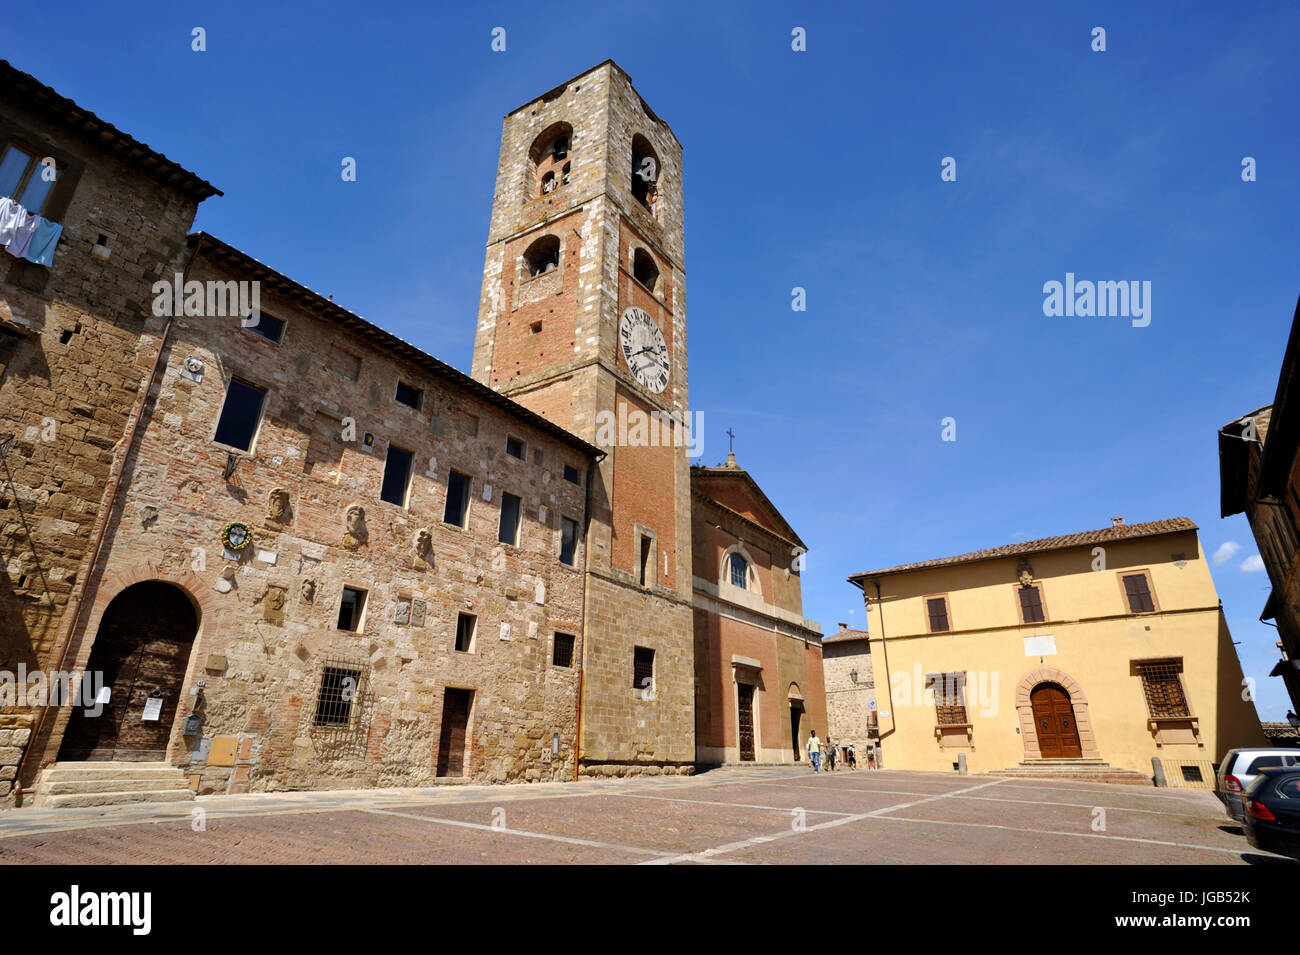 Palazzo Pretorio and Cathedral, Piazza del Duomo, Colle di Val d'Elsa, Tuscany, Italy Stock Photo